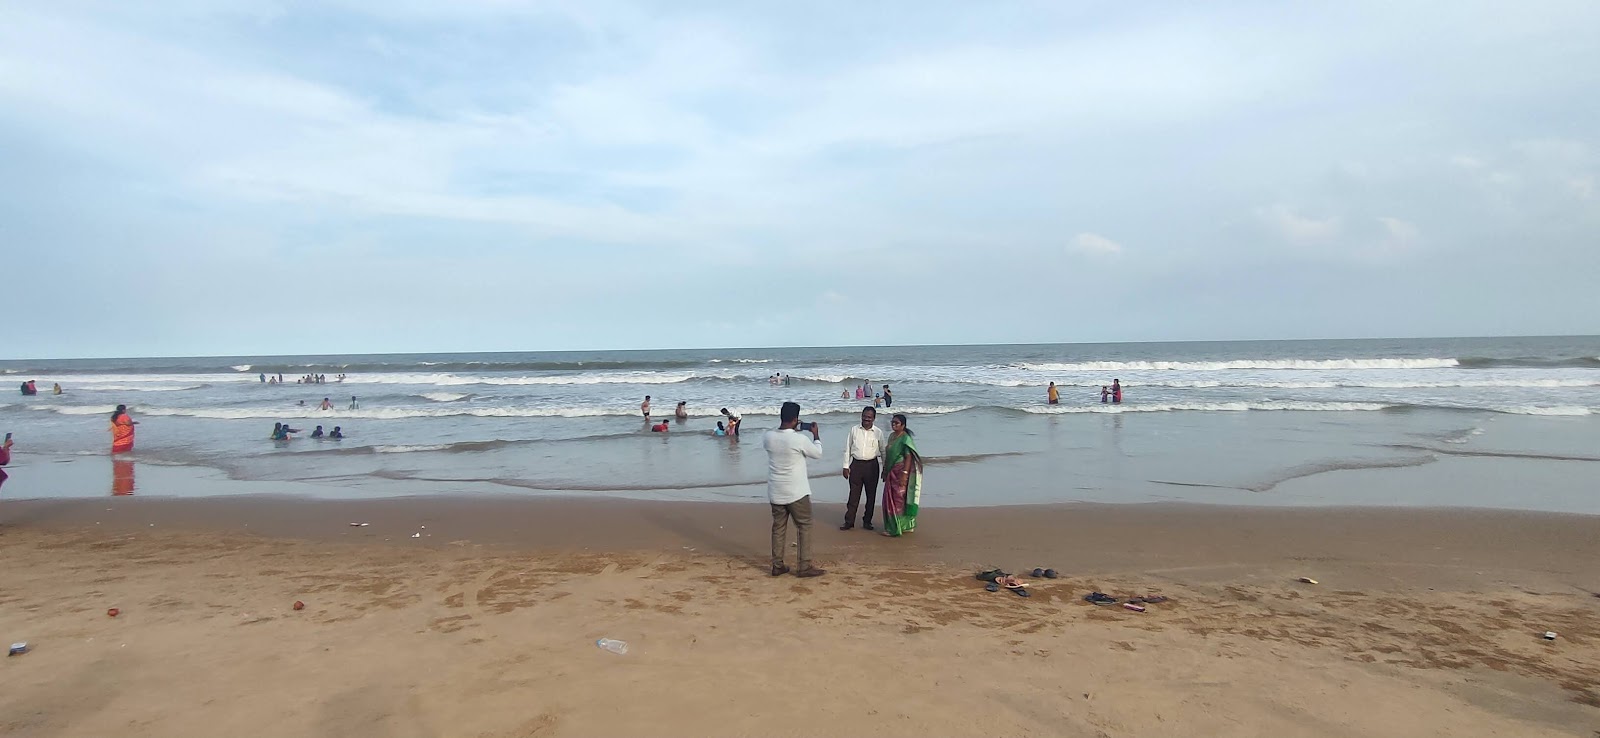 Photo de Ramapuram Shootout Beach avec l'eau cristalline de surface